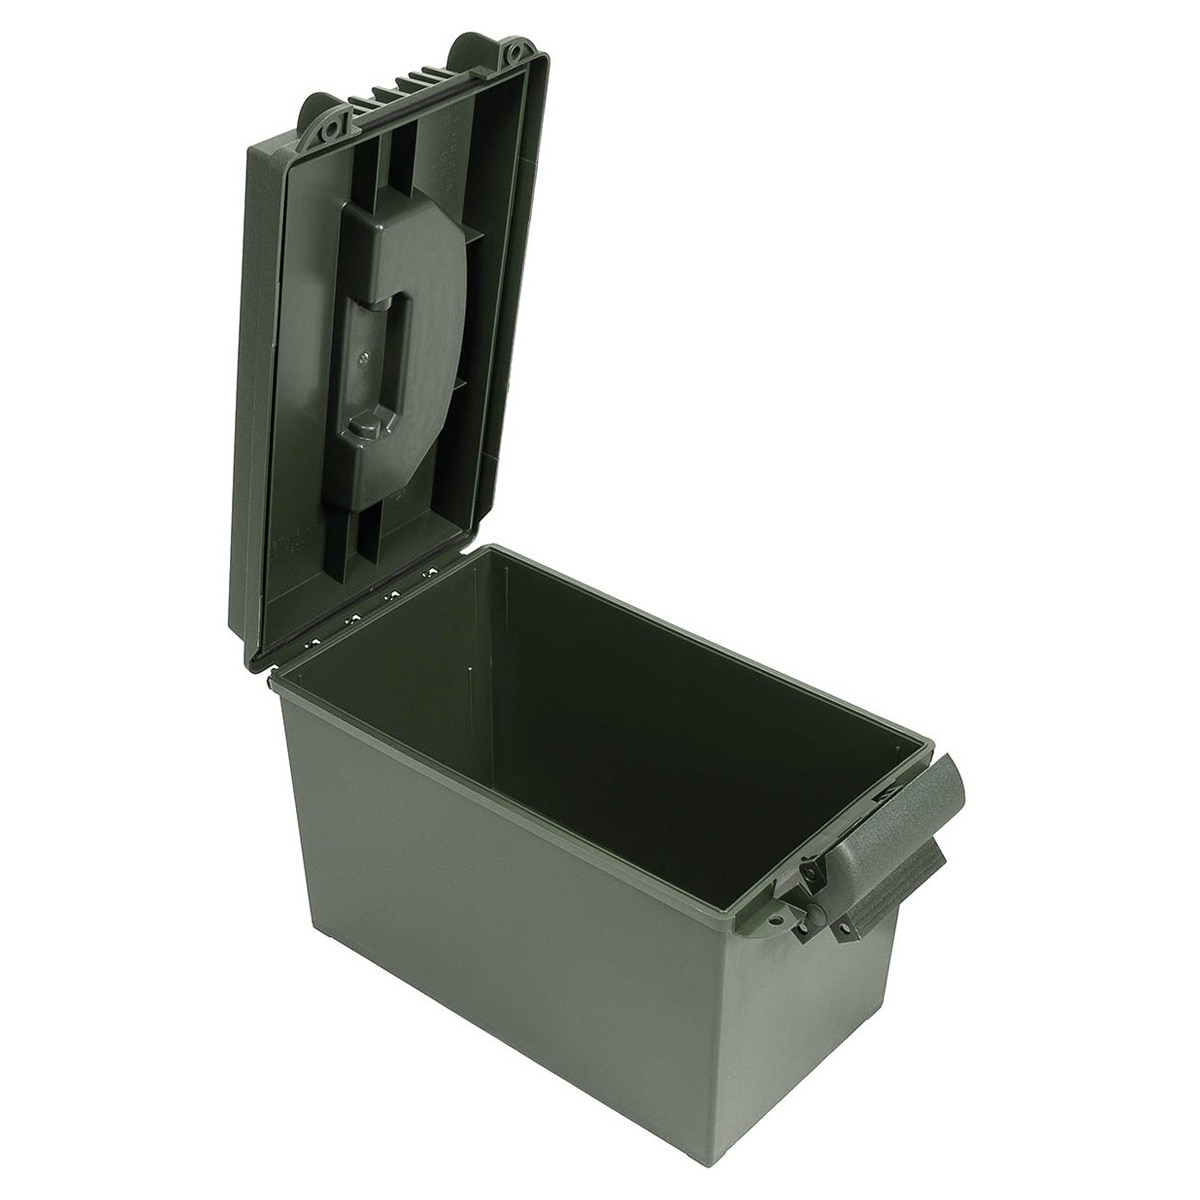 Коробка для боєприпасів MFH US Ammo Box Plastic кал. 50 - Olive